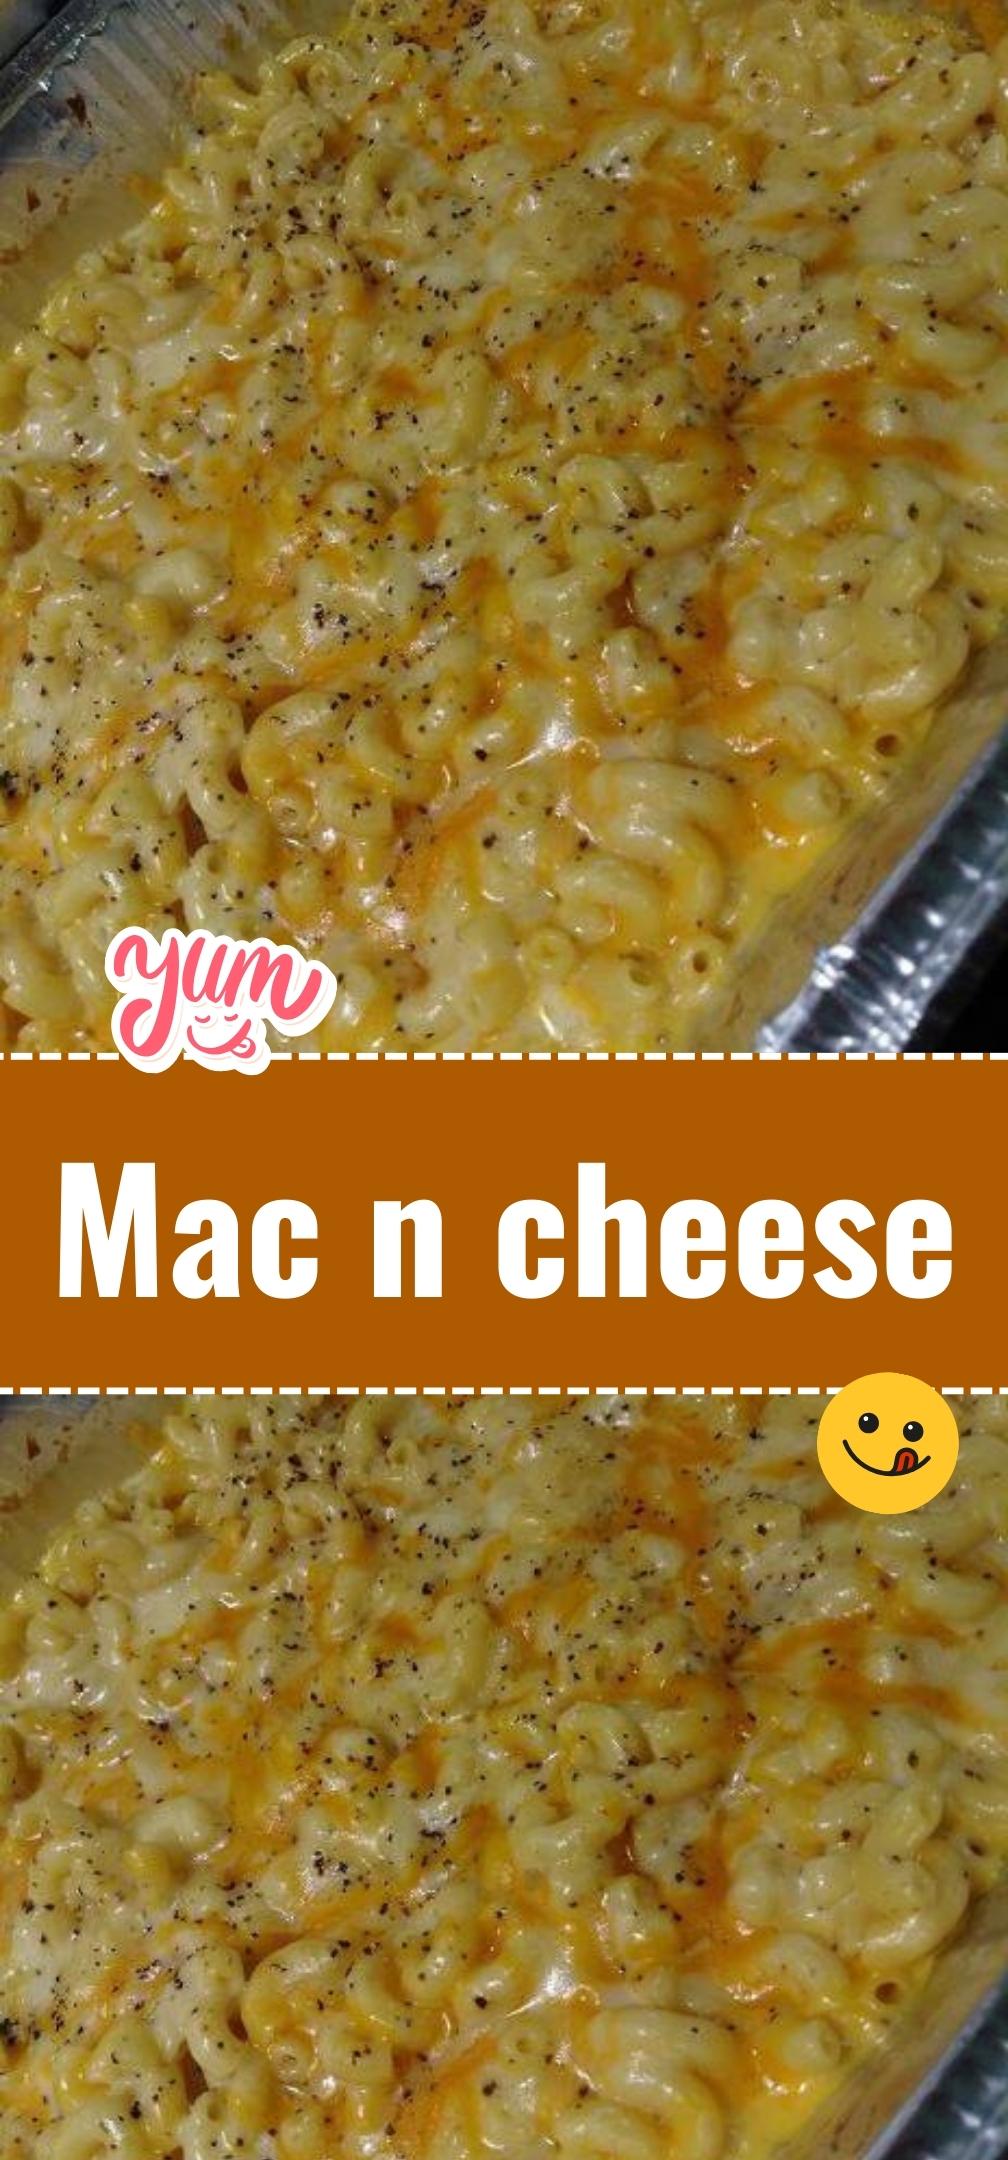 Mac n cheese